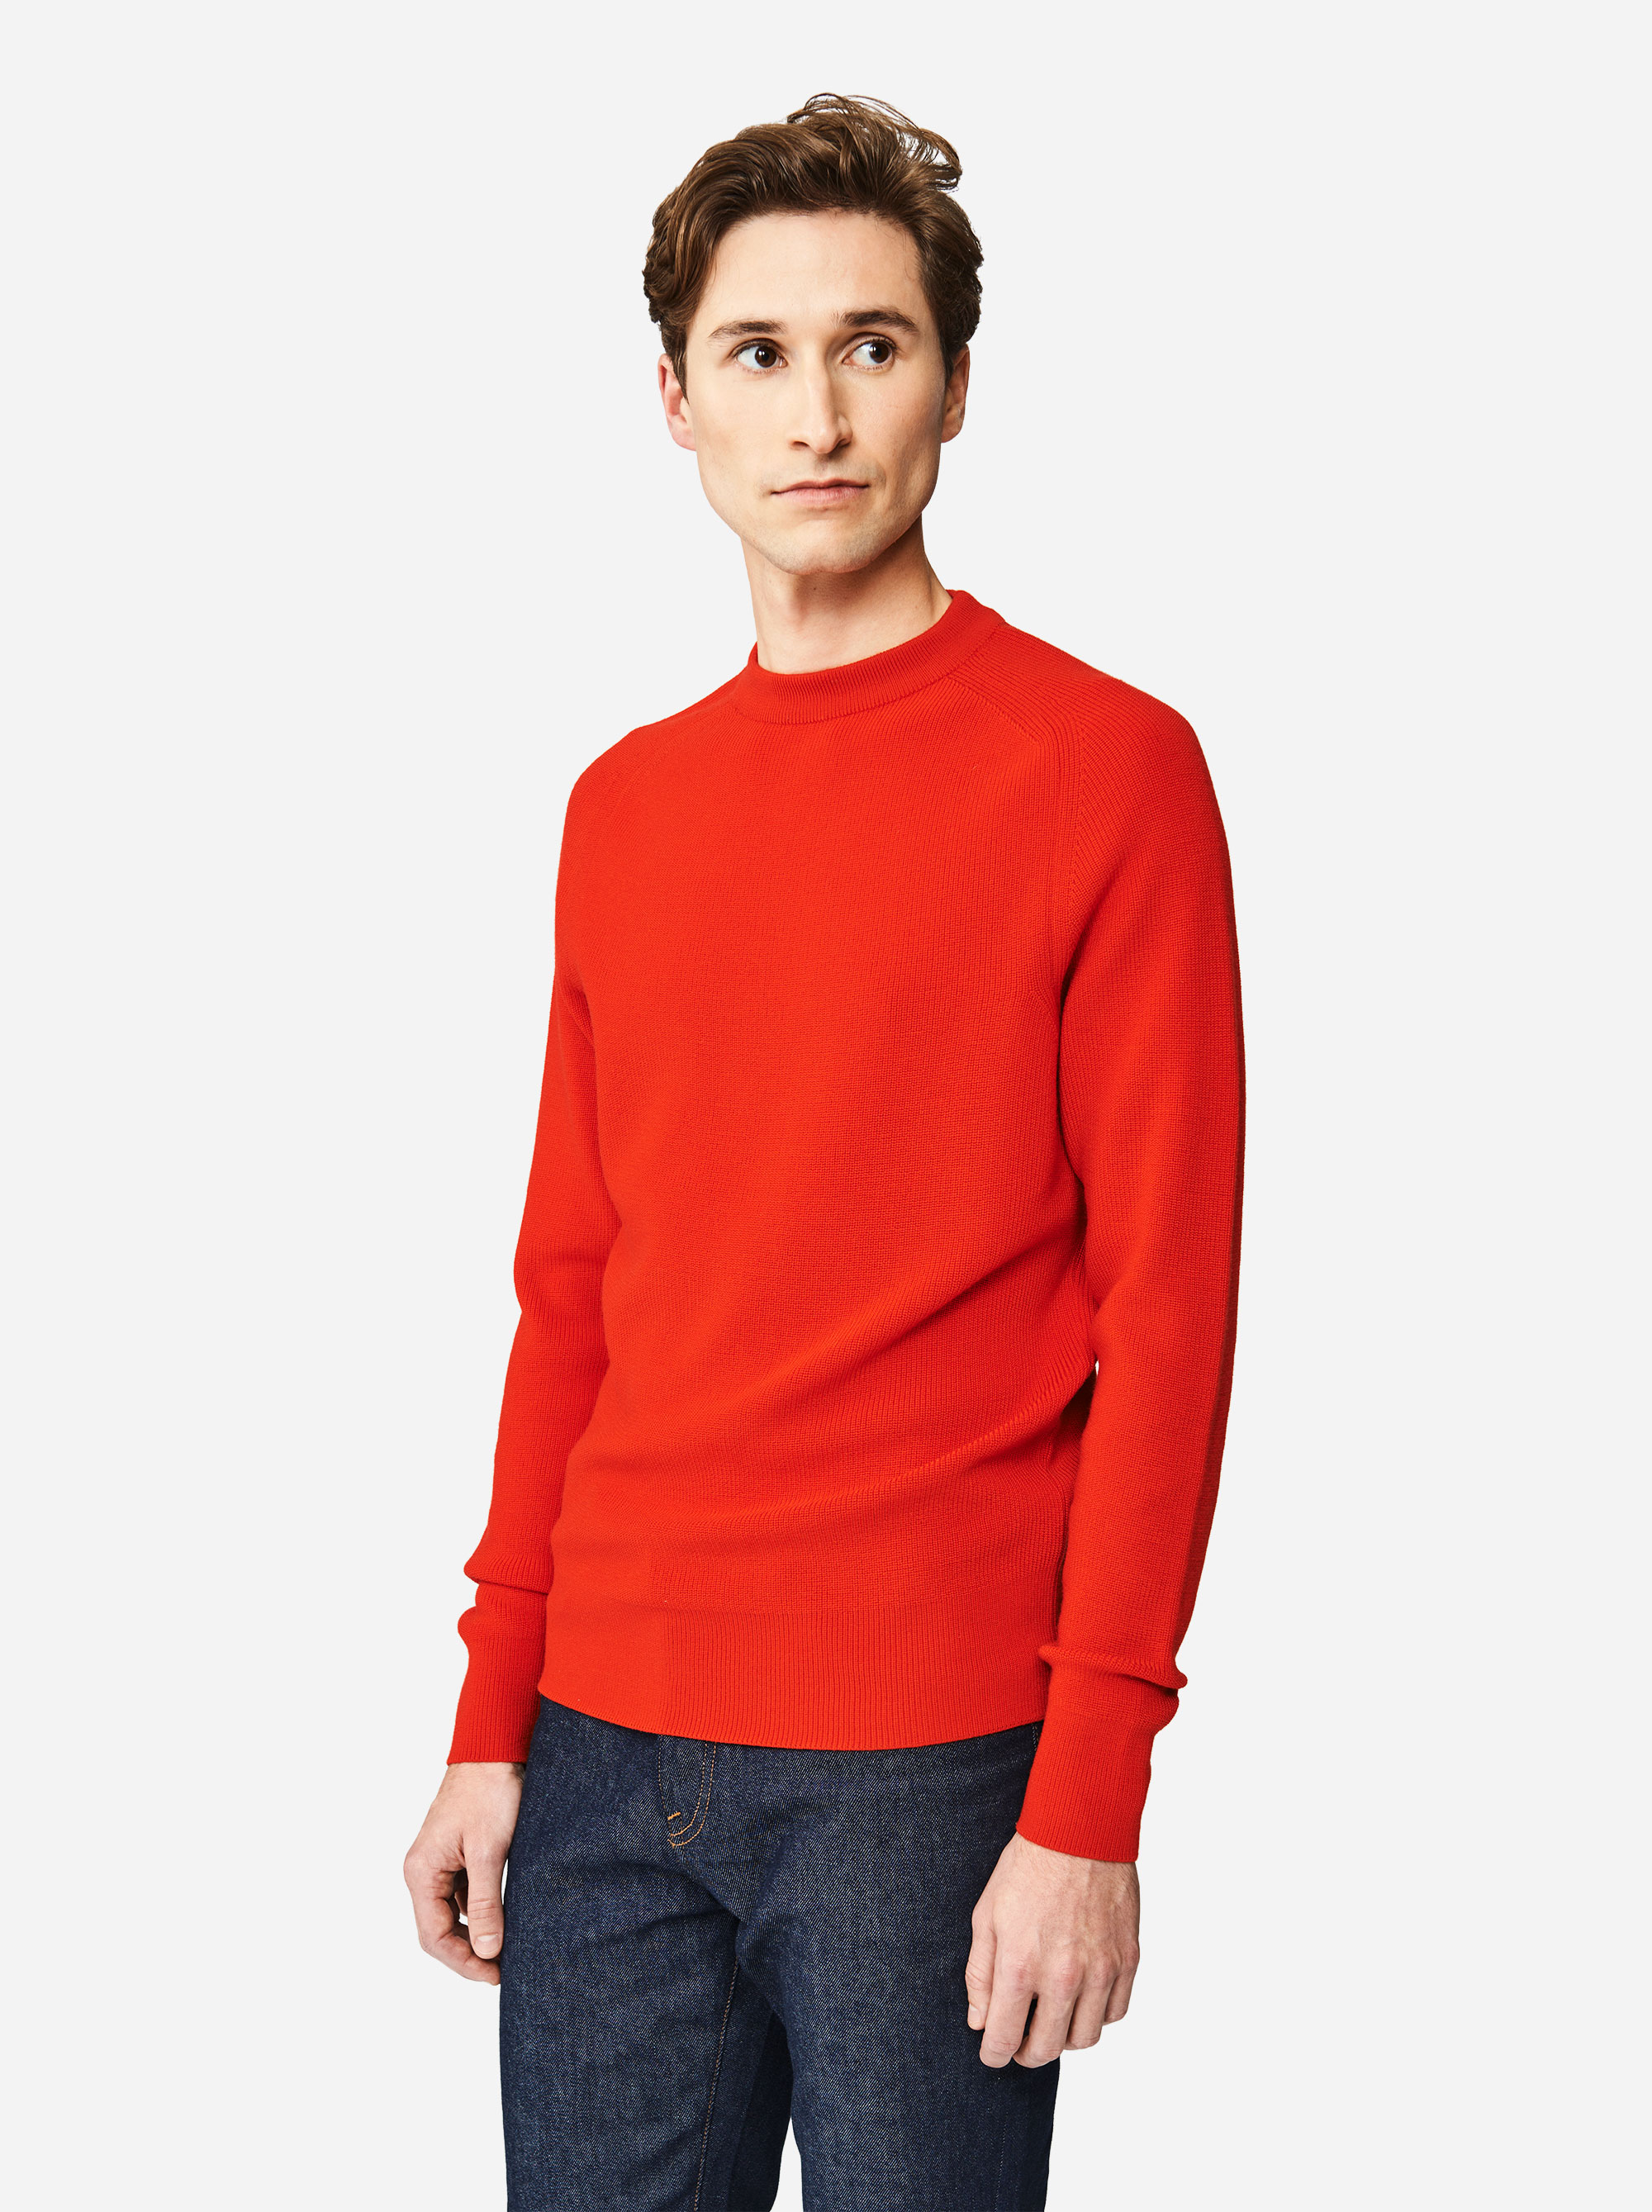 Teym - The Merino Sweater - Men - Red - 2